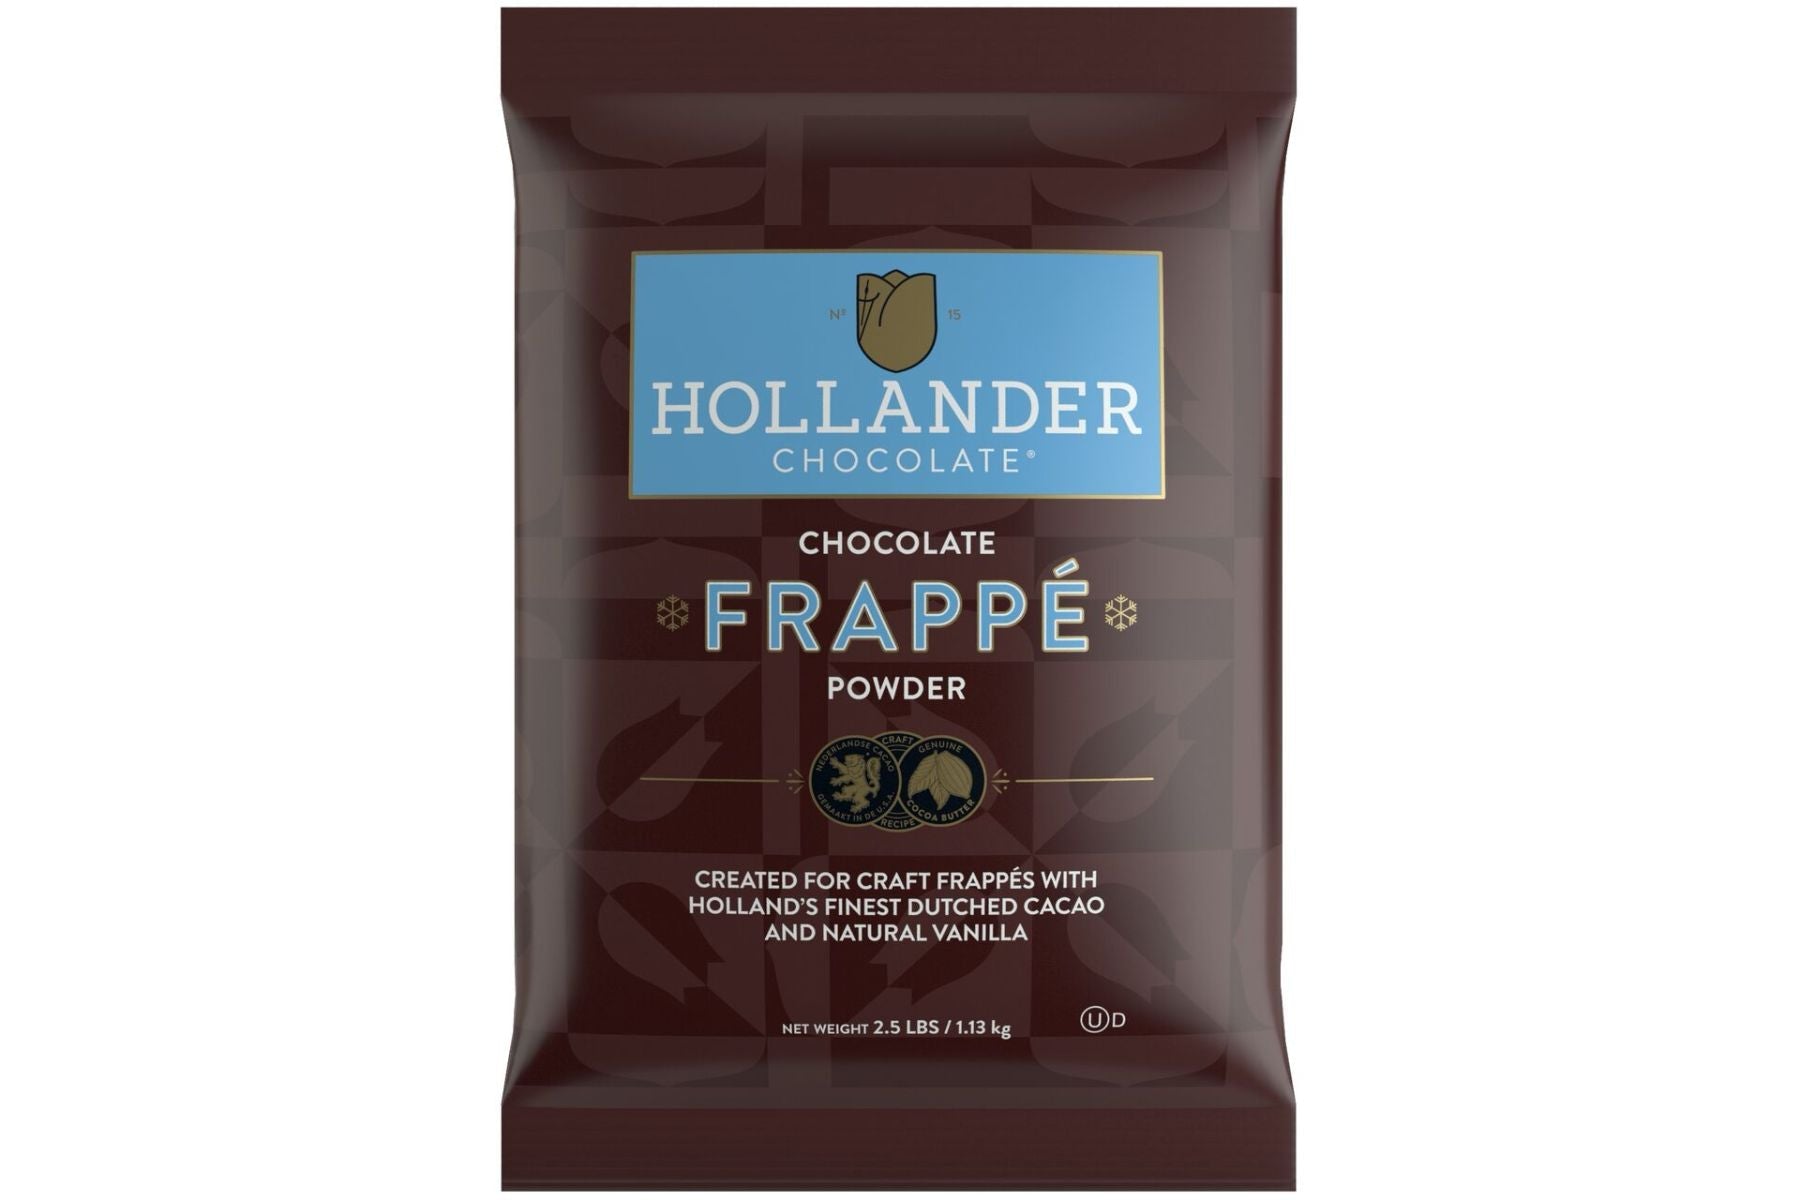 Hollander Creme Frappe & Blender Base - 2.5 lb. Bulk Bag: Chocolate Frappe